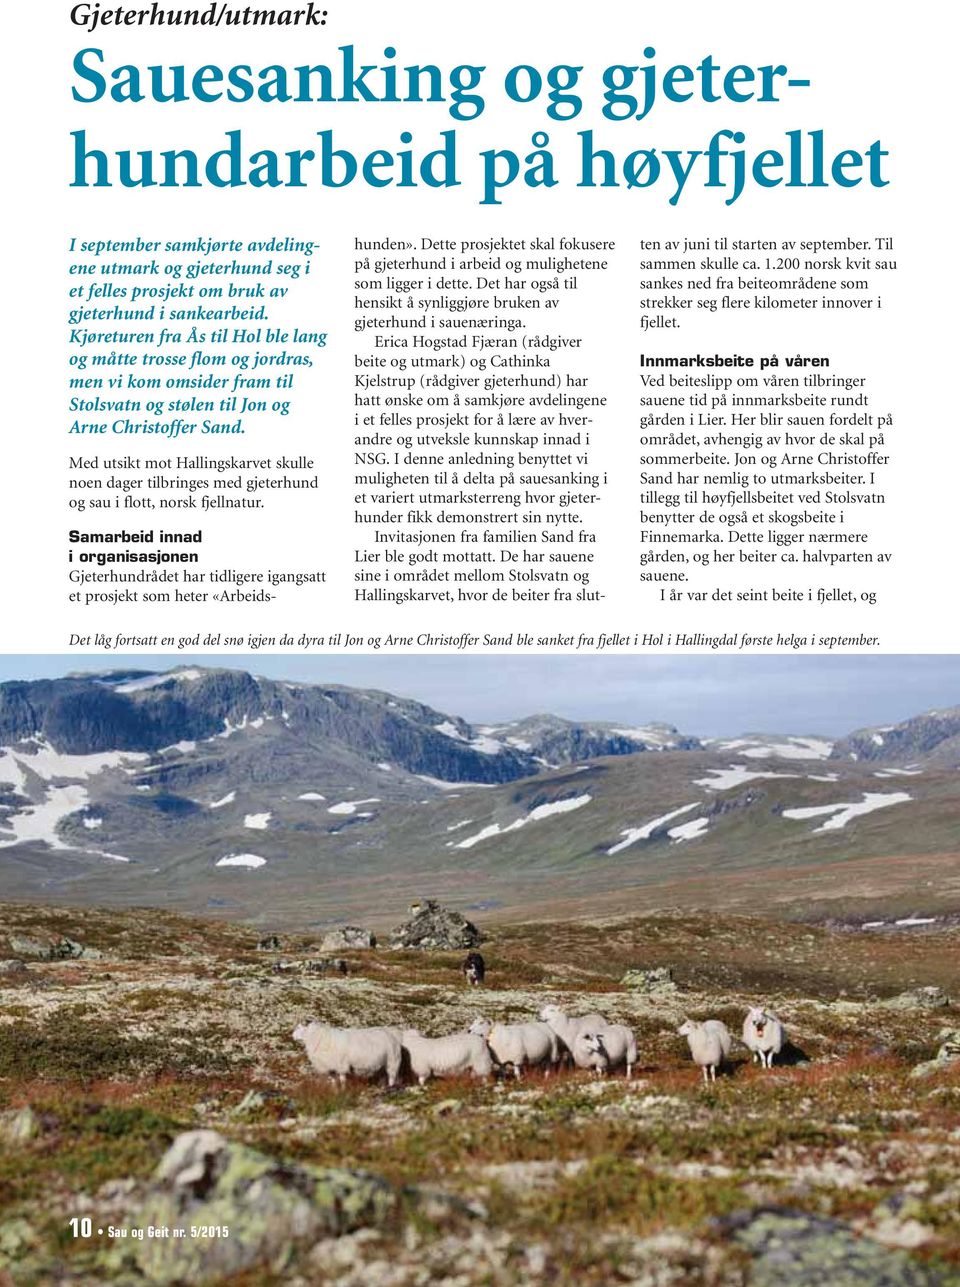 Med utsikt mot Hallingskarvet skulle noen dager tilbringes med gjeterhund og sau i flott, norsk fjellnatur.